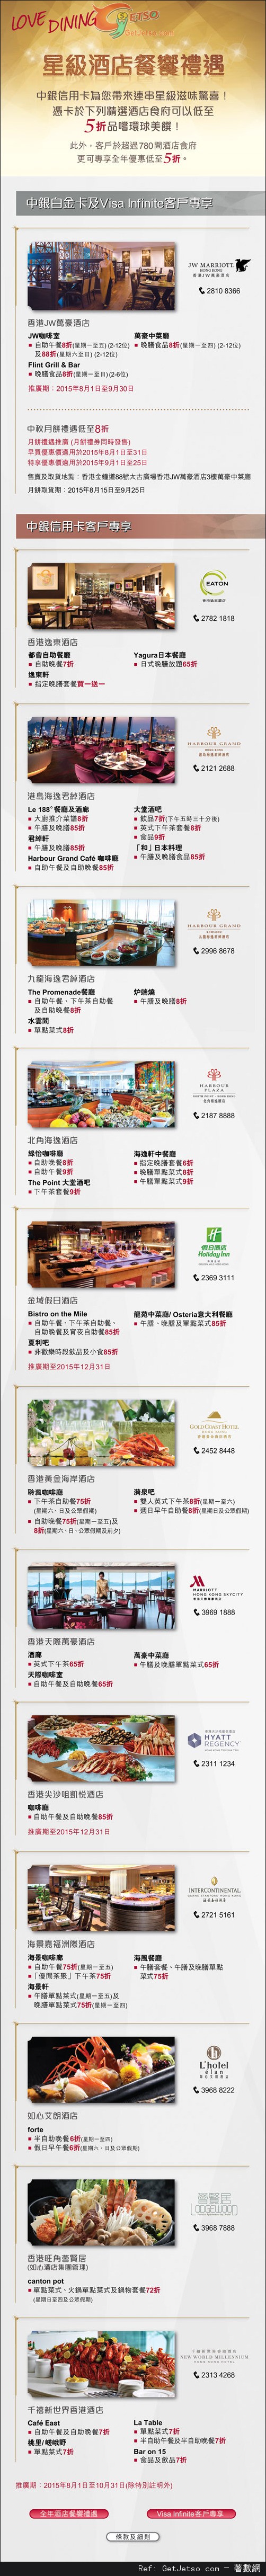 中銀信用卡享星級酒店餐饗禮遇低至半價優惠(至15年10月31日)圖片1